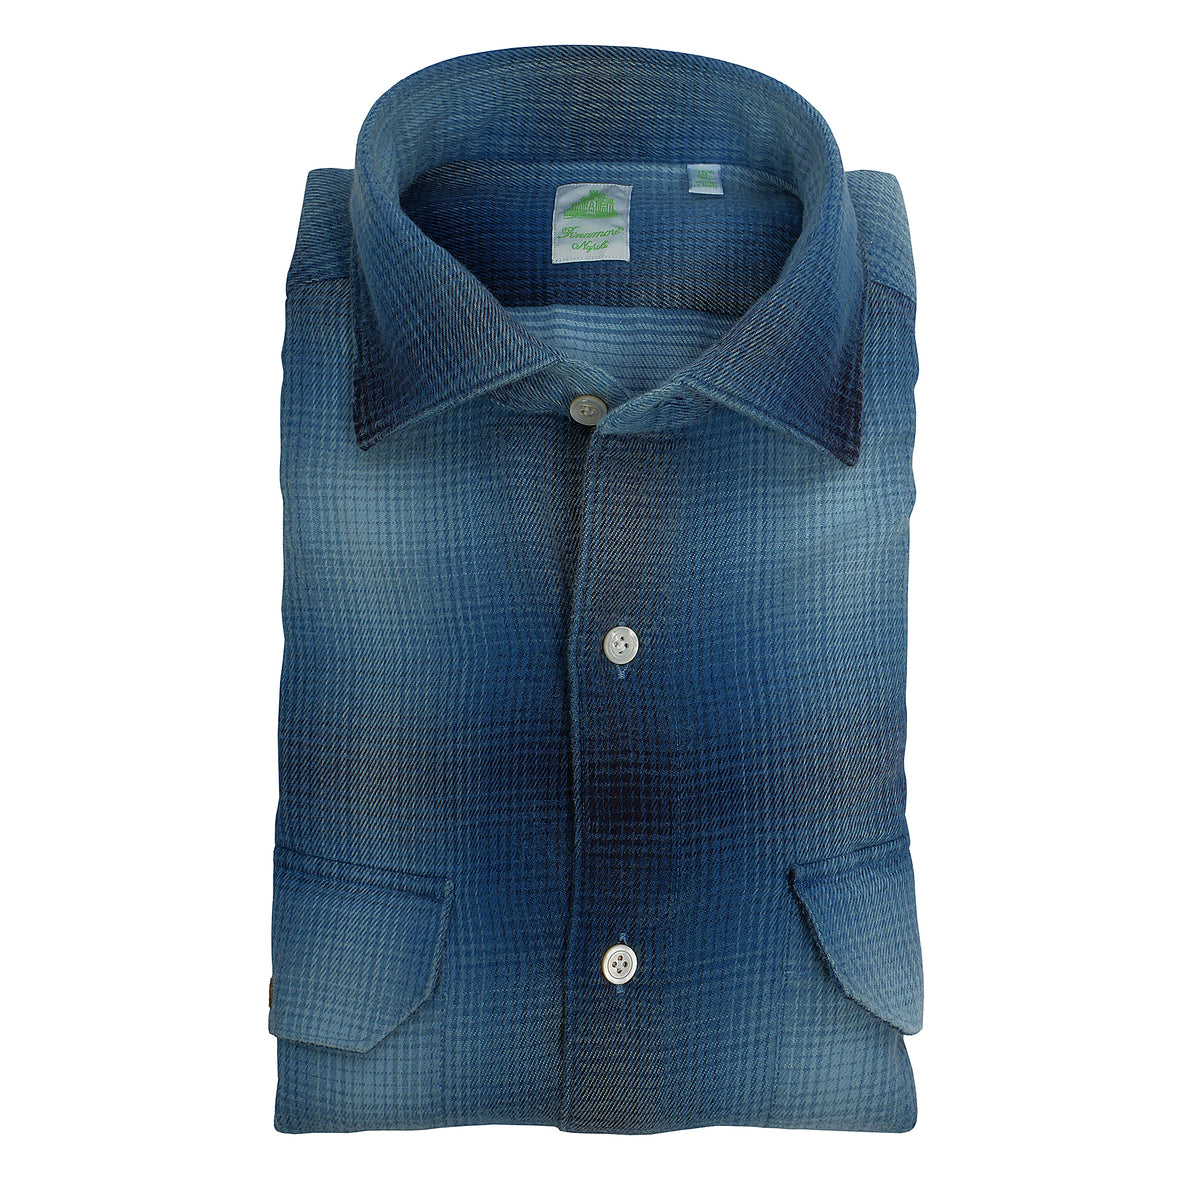 Tokyo slim fit shirt in fake indigo madras sport in cotton. Finamore 1925